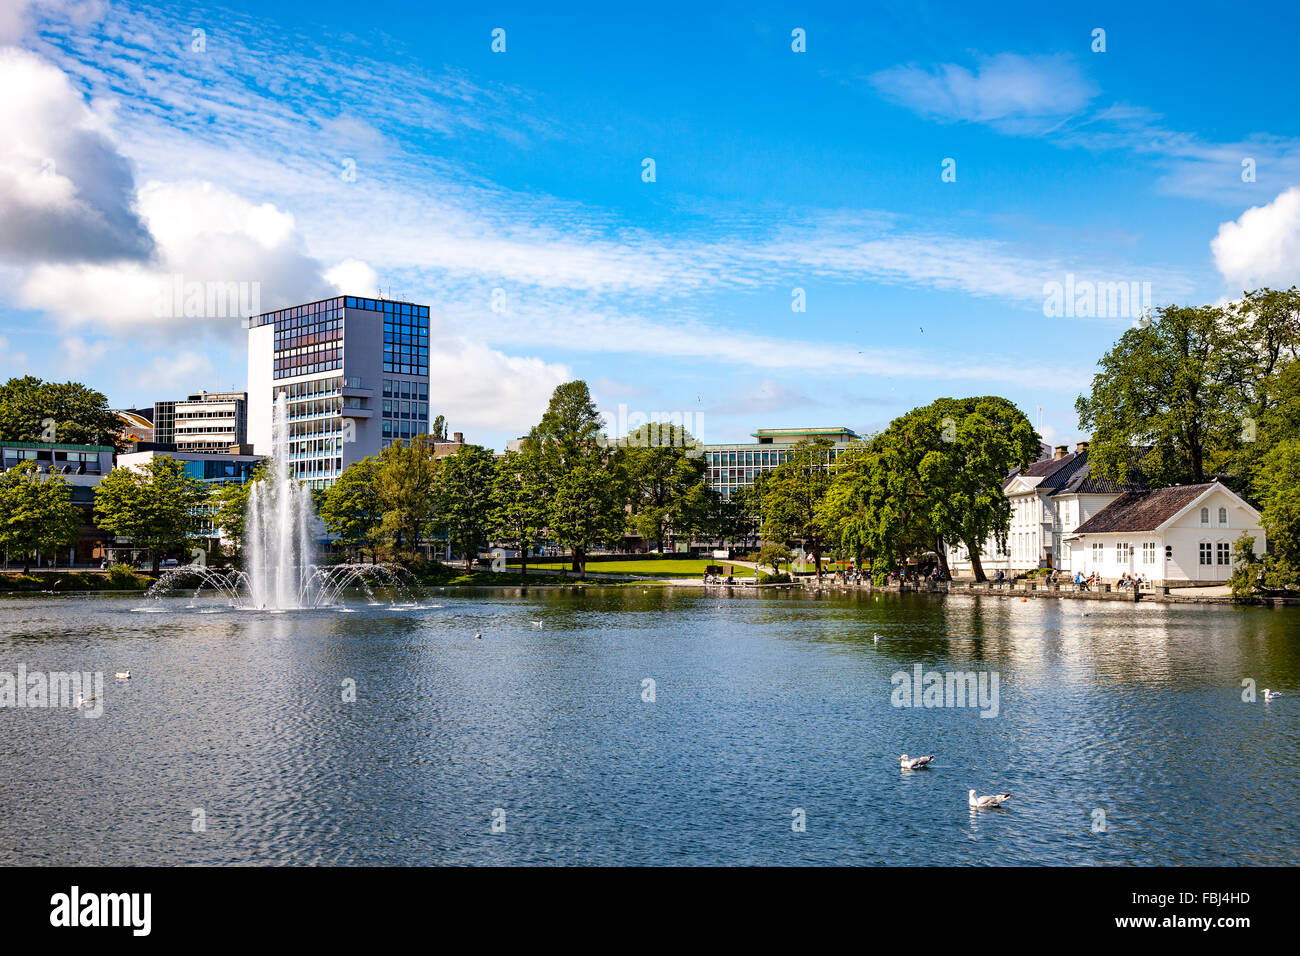 Breiavatnet est le petit lac avec fontaine situé dans le centre de Stavanger, Norvège. Banque D'Images